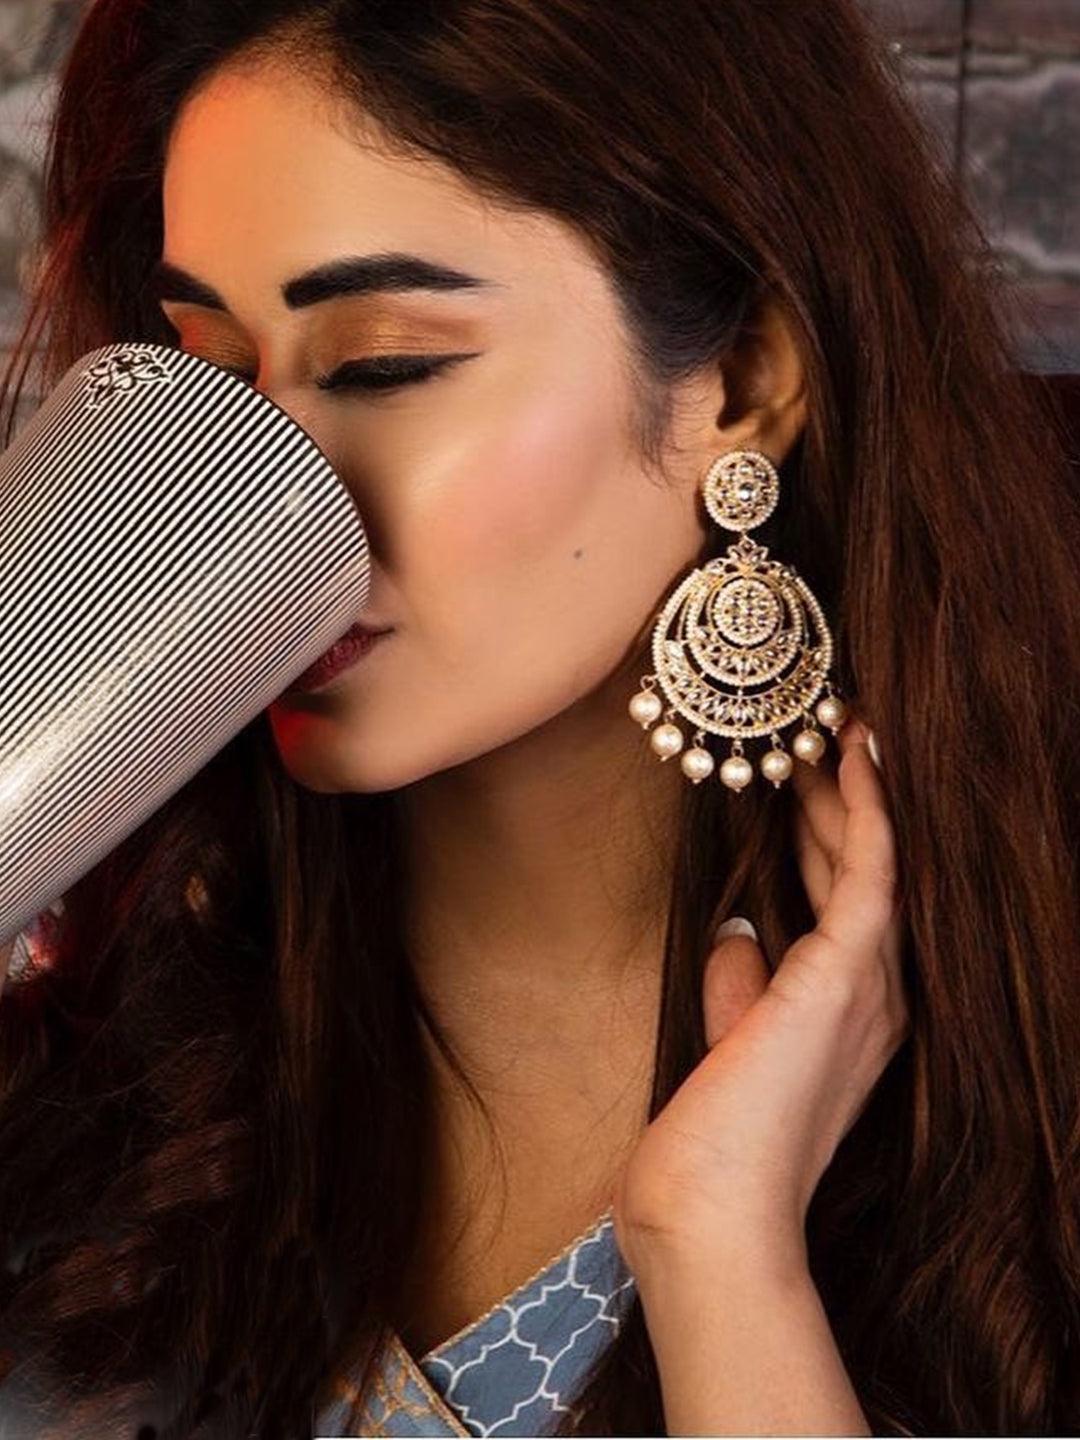 Ishhaara Alisha Seema Khan In Kundan Chandbali Earrings With Pearls